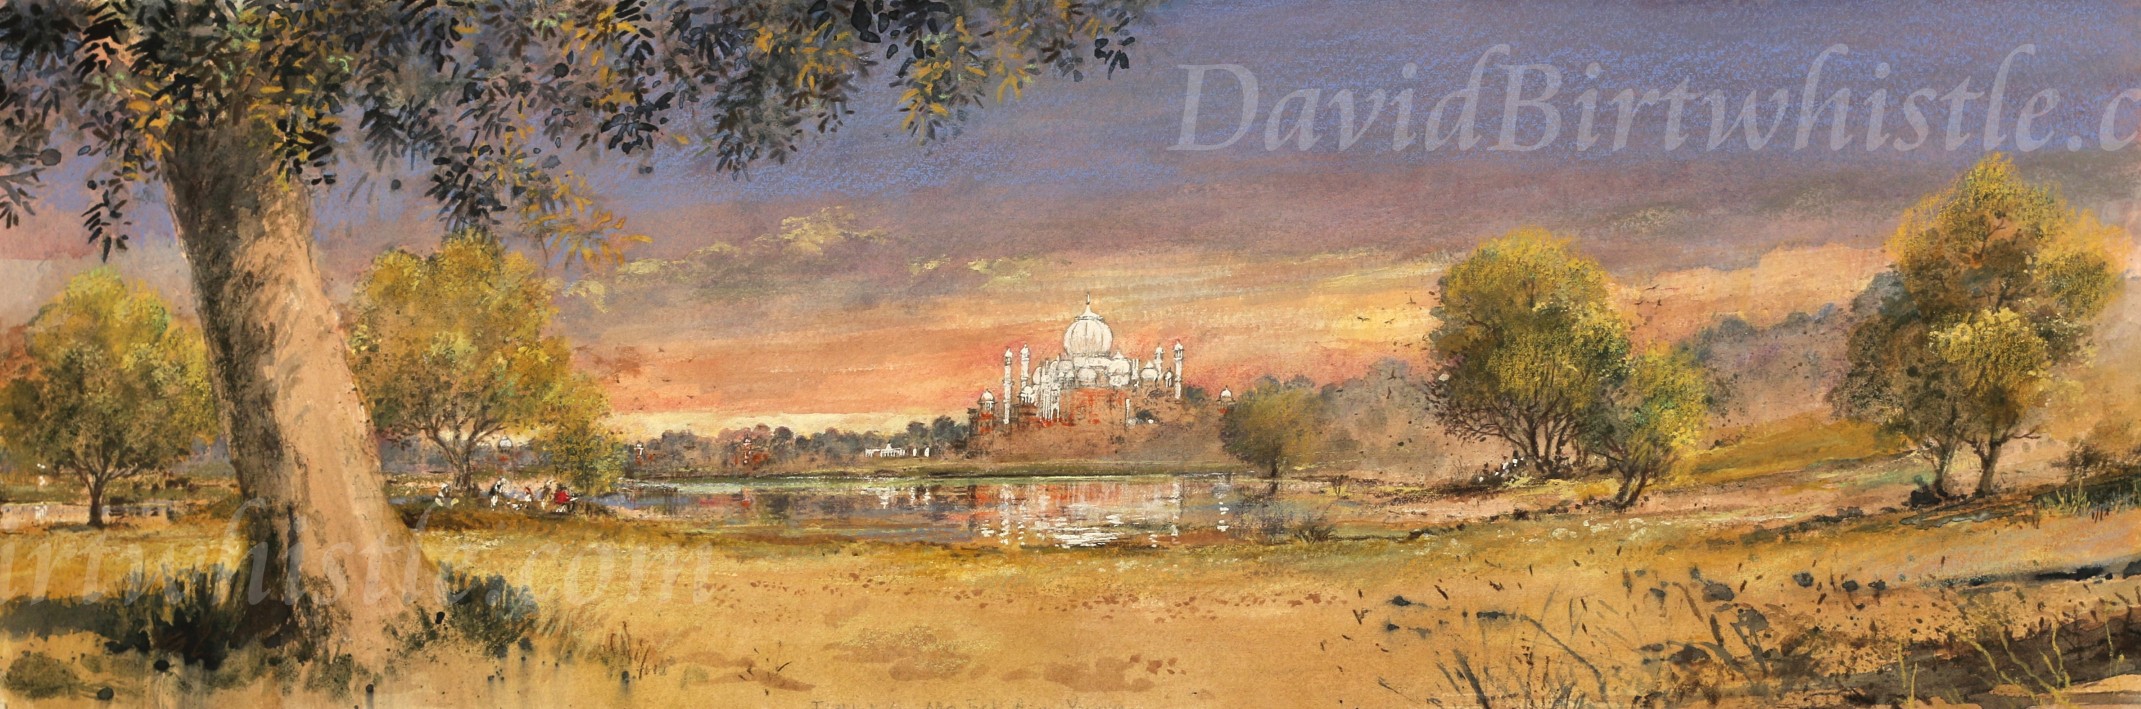 Taj Mahal and Yamuna River